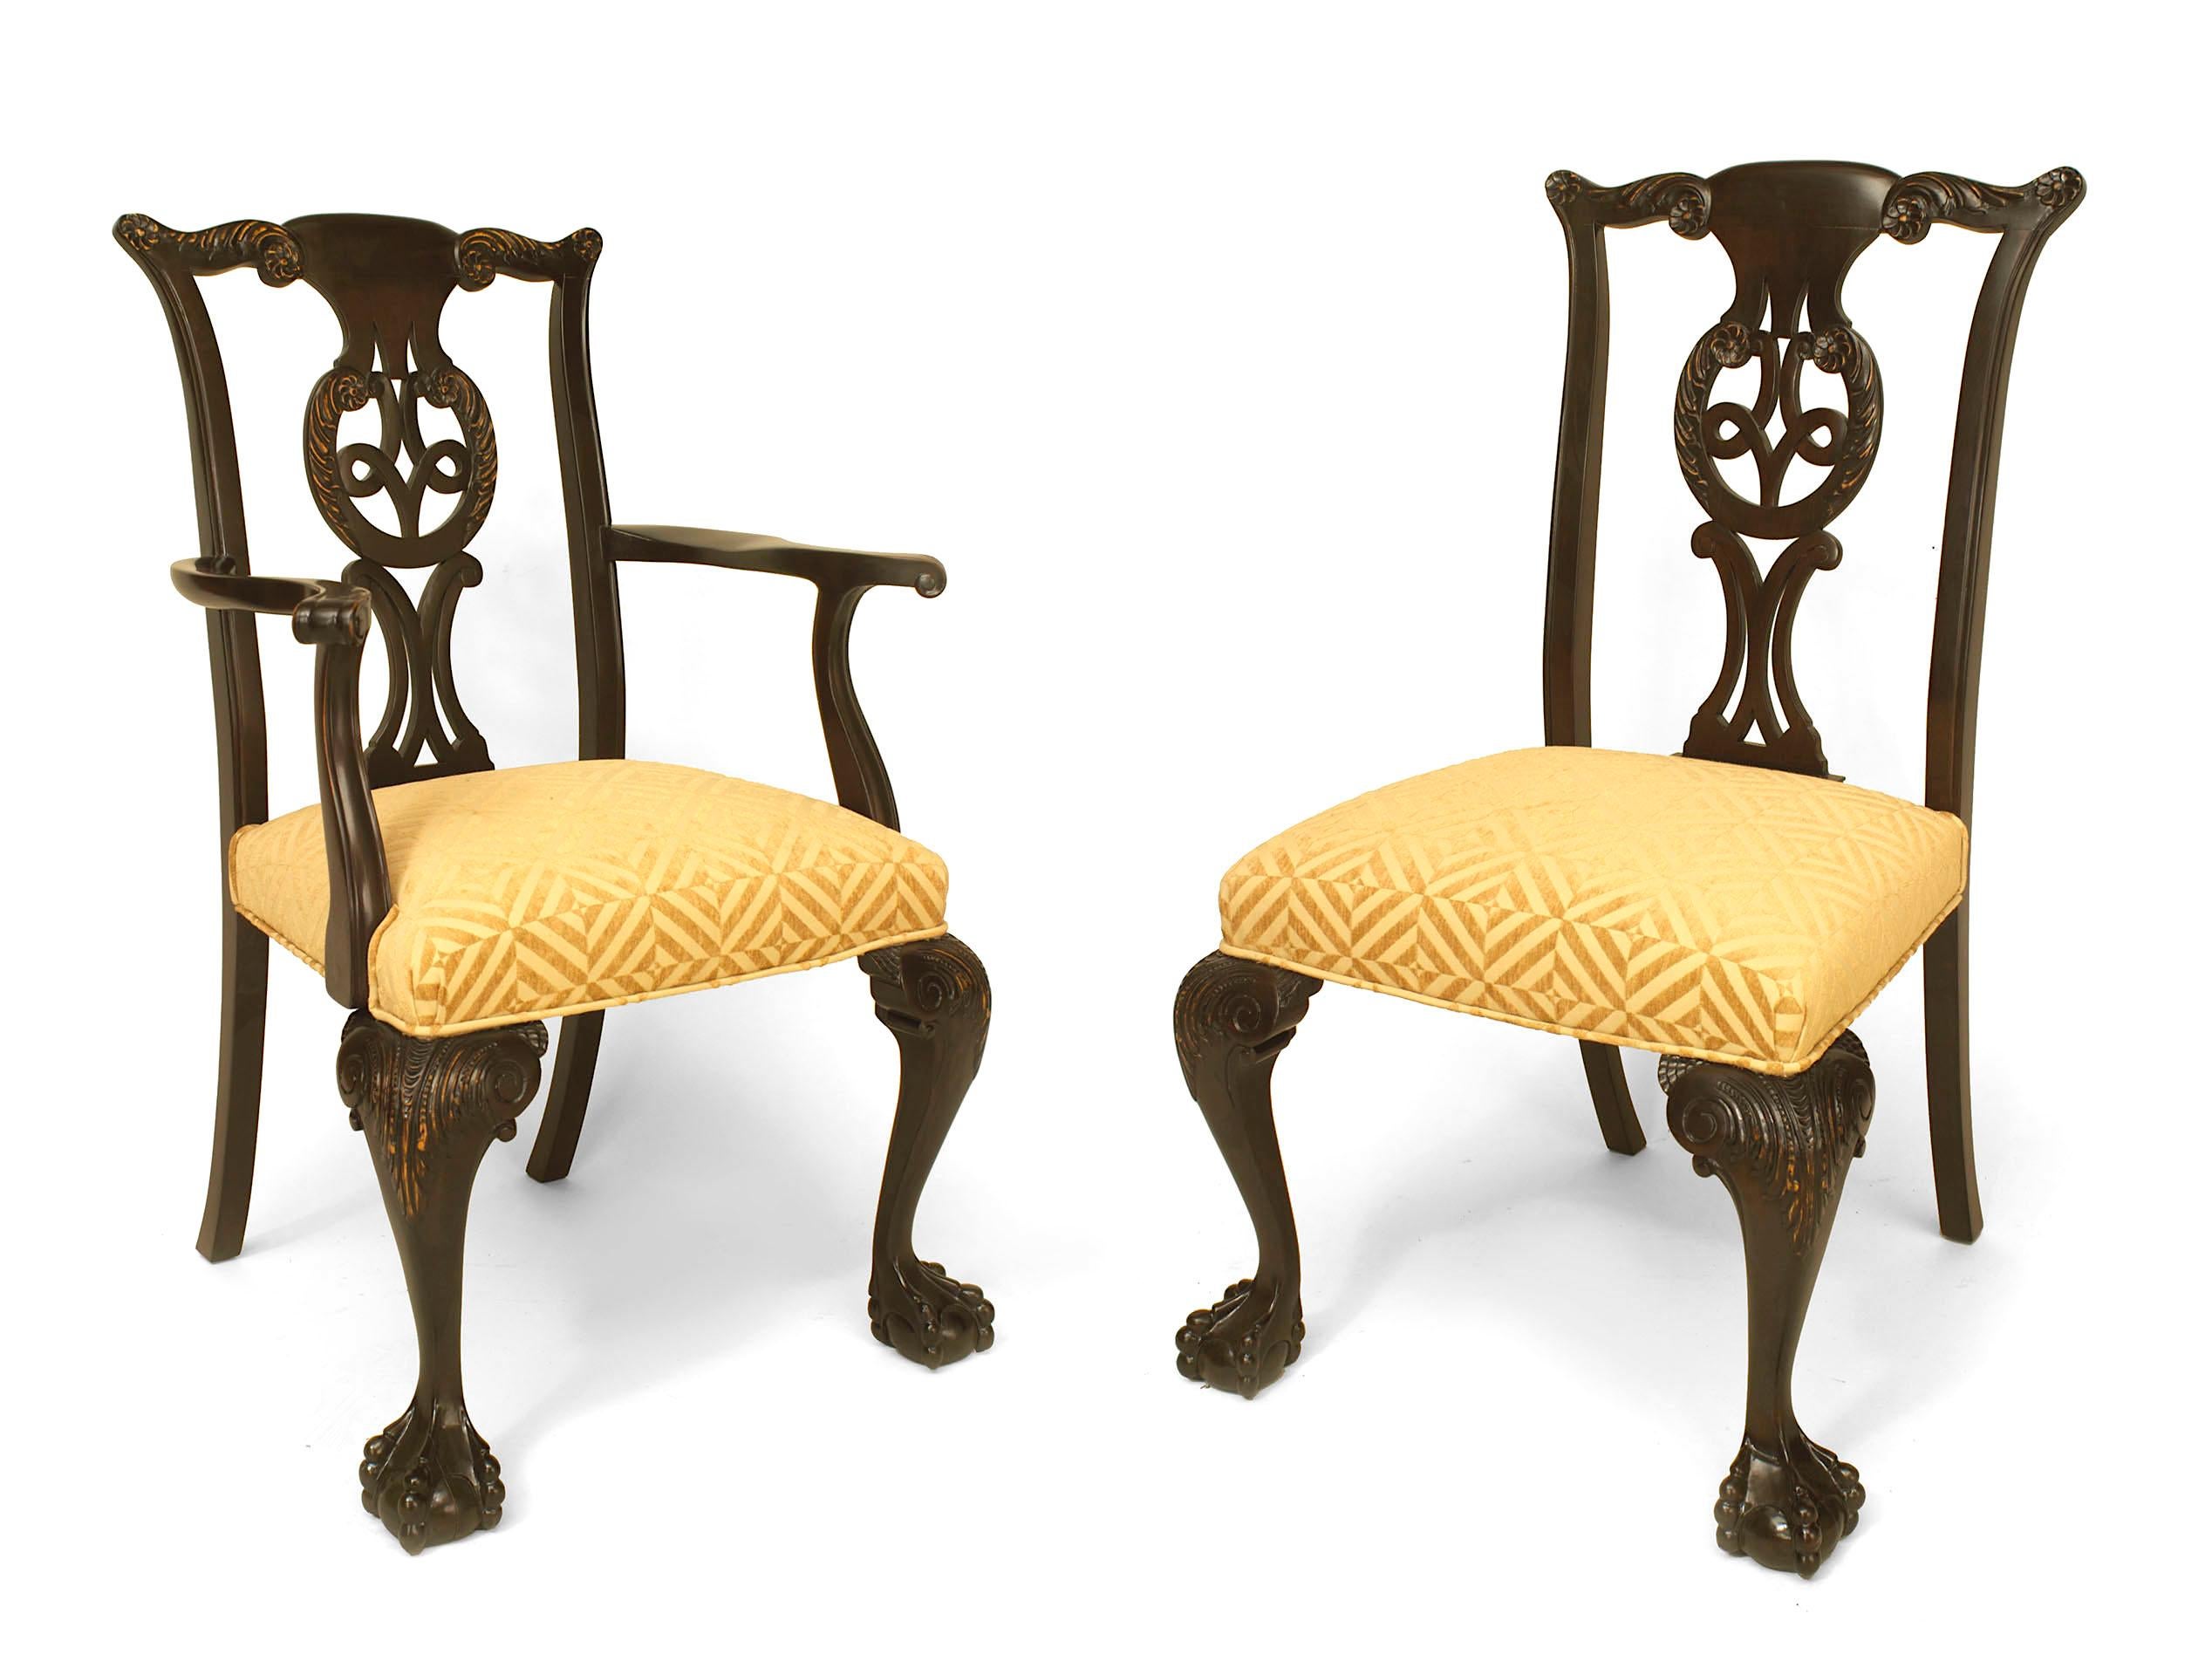 Satz von 12 (2 Arme/10 Seiten) irischen Stühlen im Stil von George II (19/20. Jh.) aus geschnitztem Ulmenholz mit durchbrochenen geschnitzten Rückenlehnen und gemusterten Chenille-Sitzflächen (Arme 23